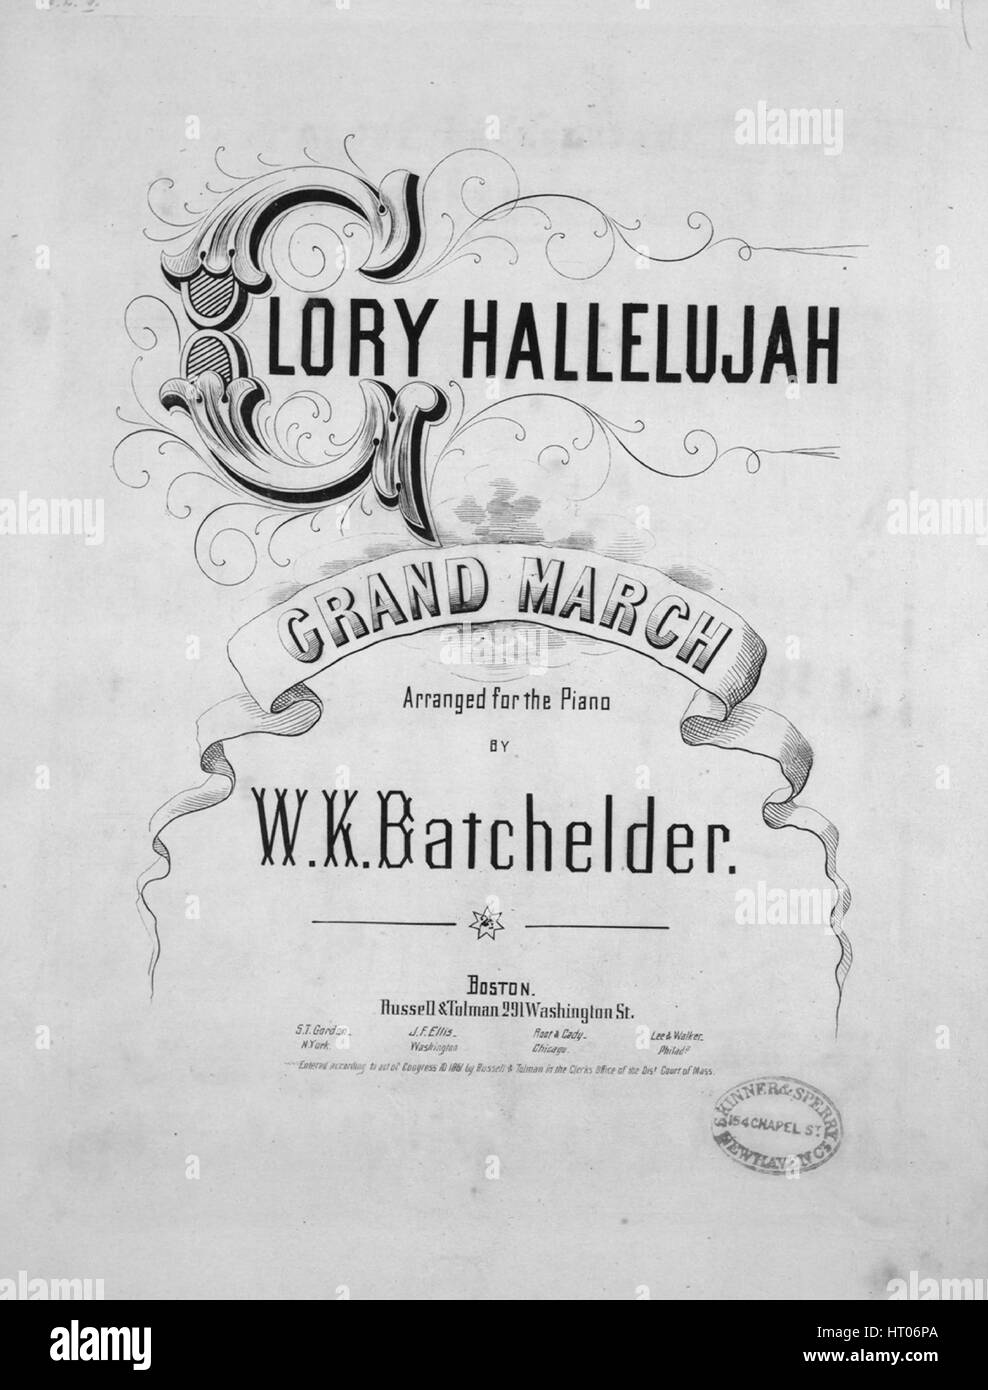 Imagen de cubierta de partituras de la canción 'Gloria aleluya Gran  marcha", con notas de autoría original leyendo 'arreglados para piano por  WK Batchelder', Estados Unidos, 1861. El editor está clasificada como '